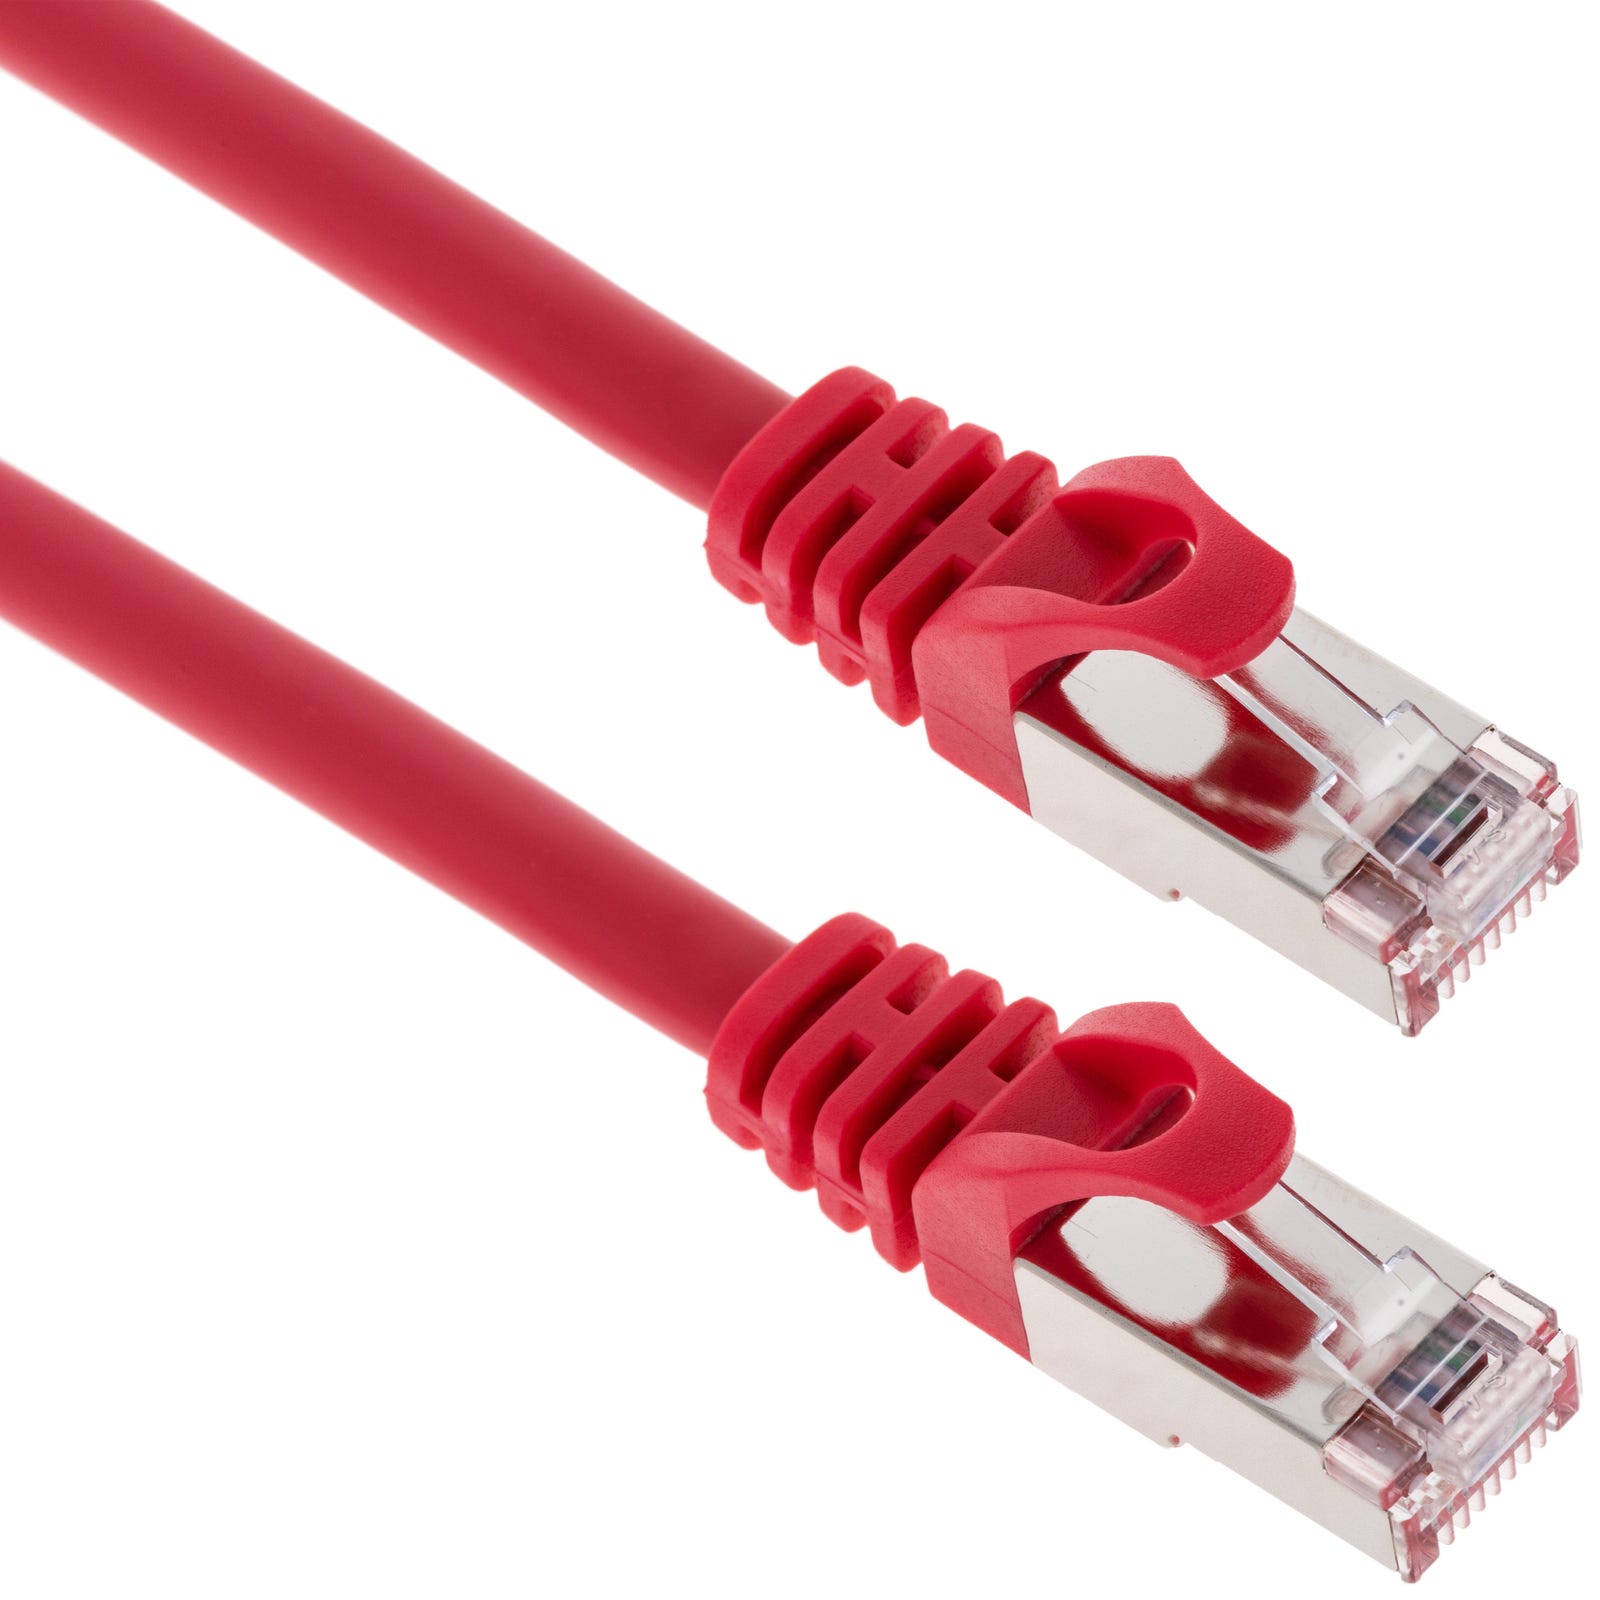 Cable réseau informatique FTP cat 6